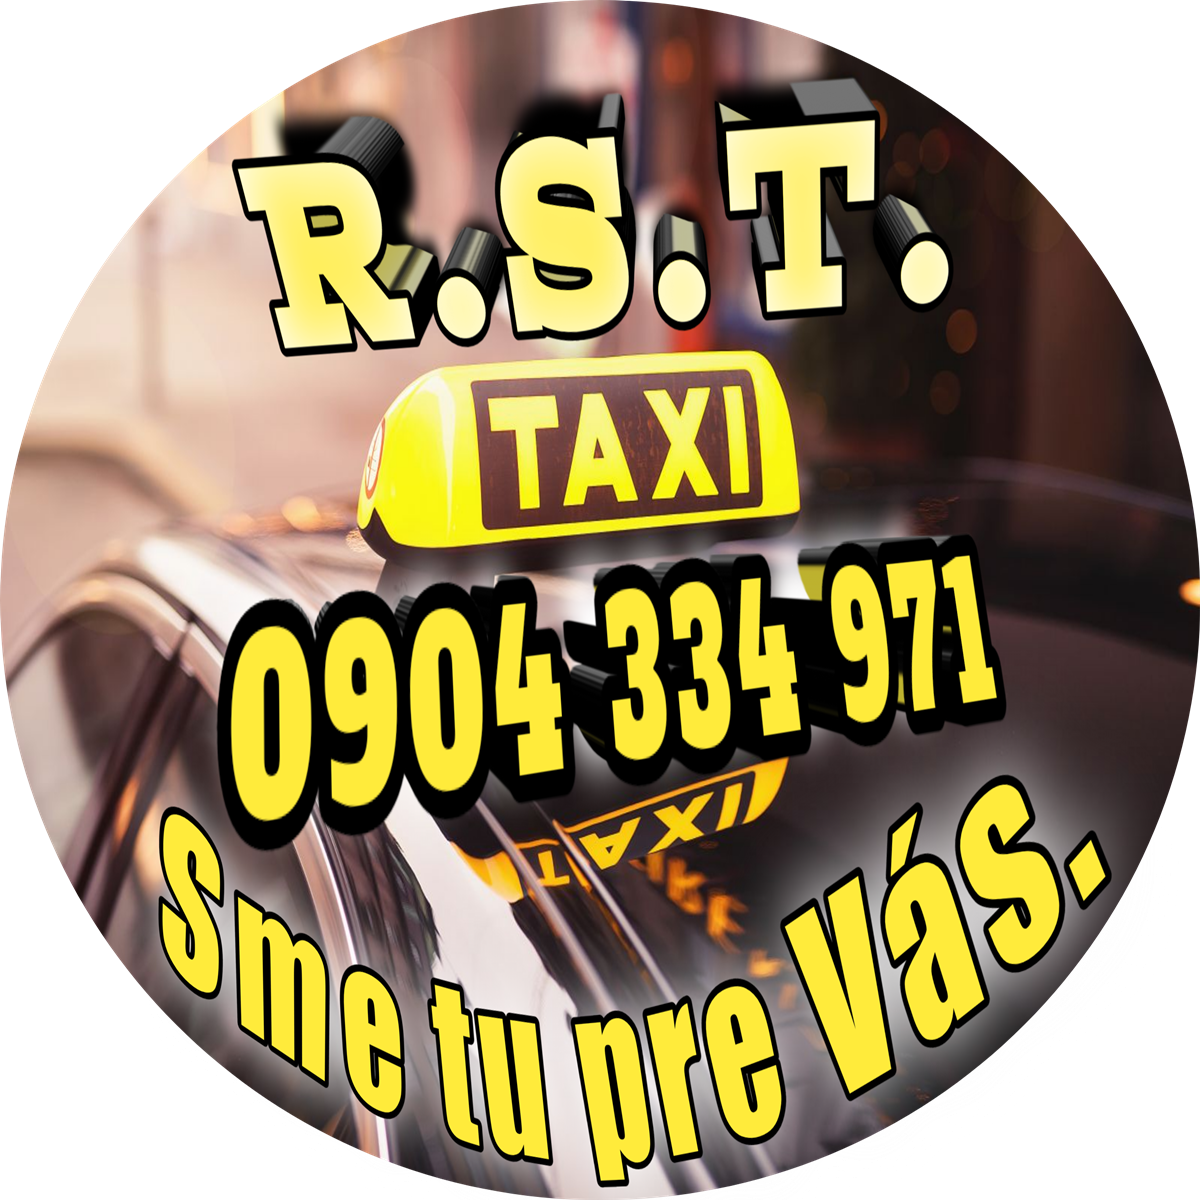 Taxislužba, Taxi, Kuriér, Doručovacie služby, Osobná preprava  - Kontakty na R.S.T. TAXI - Podbrezová 